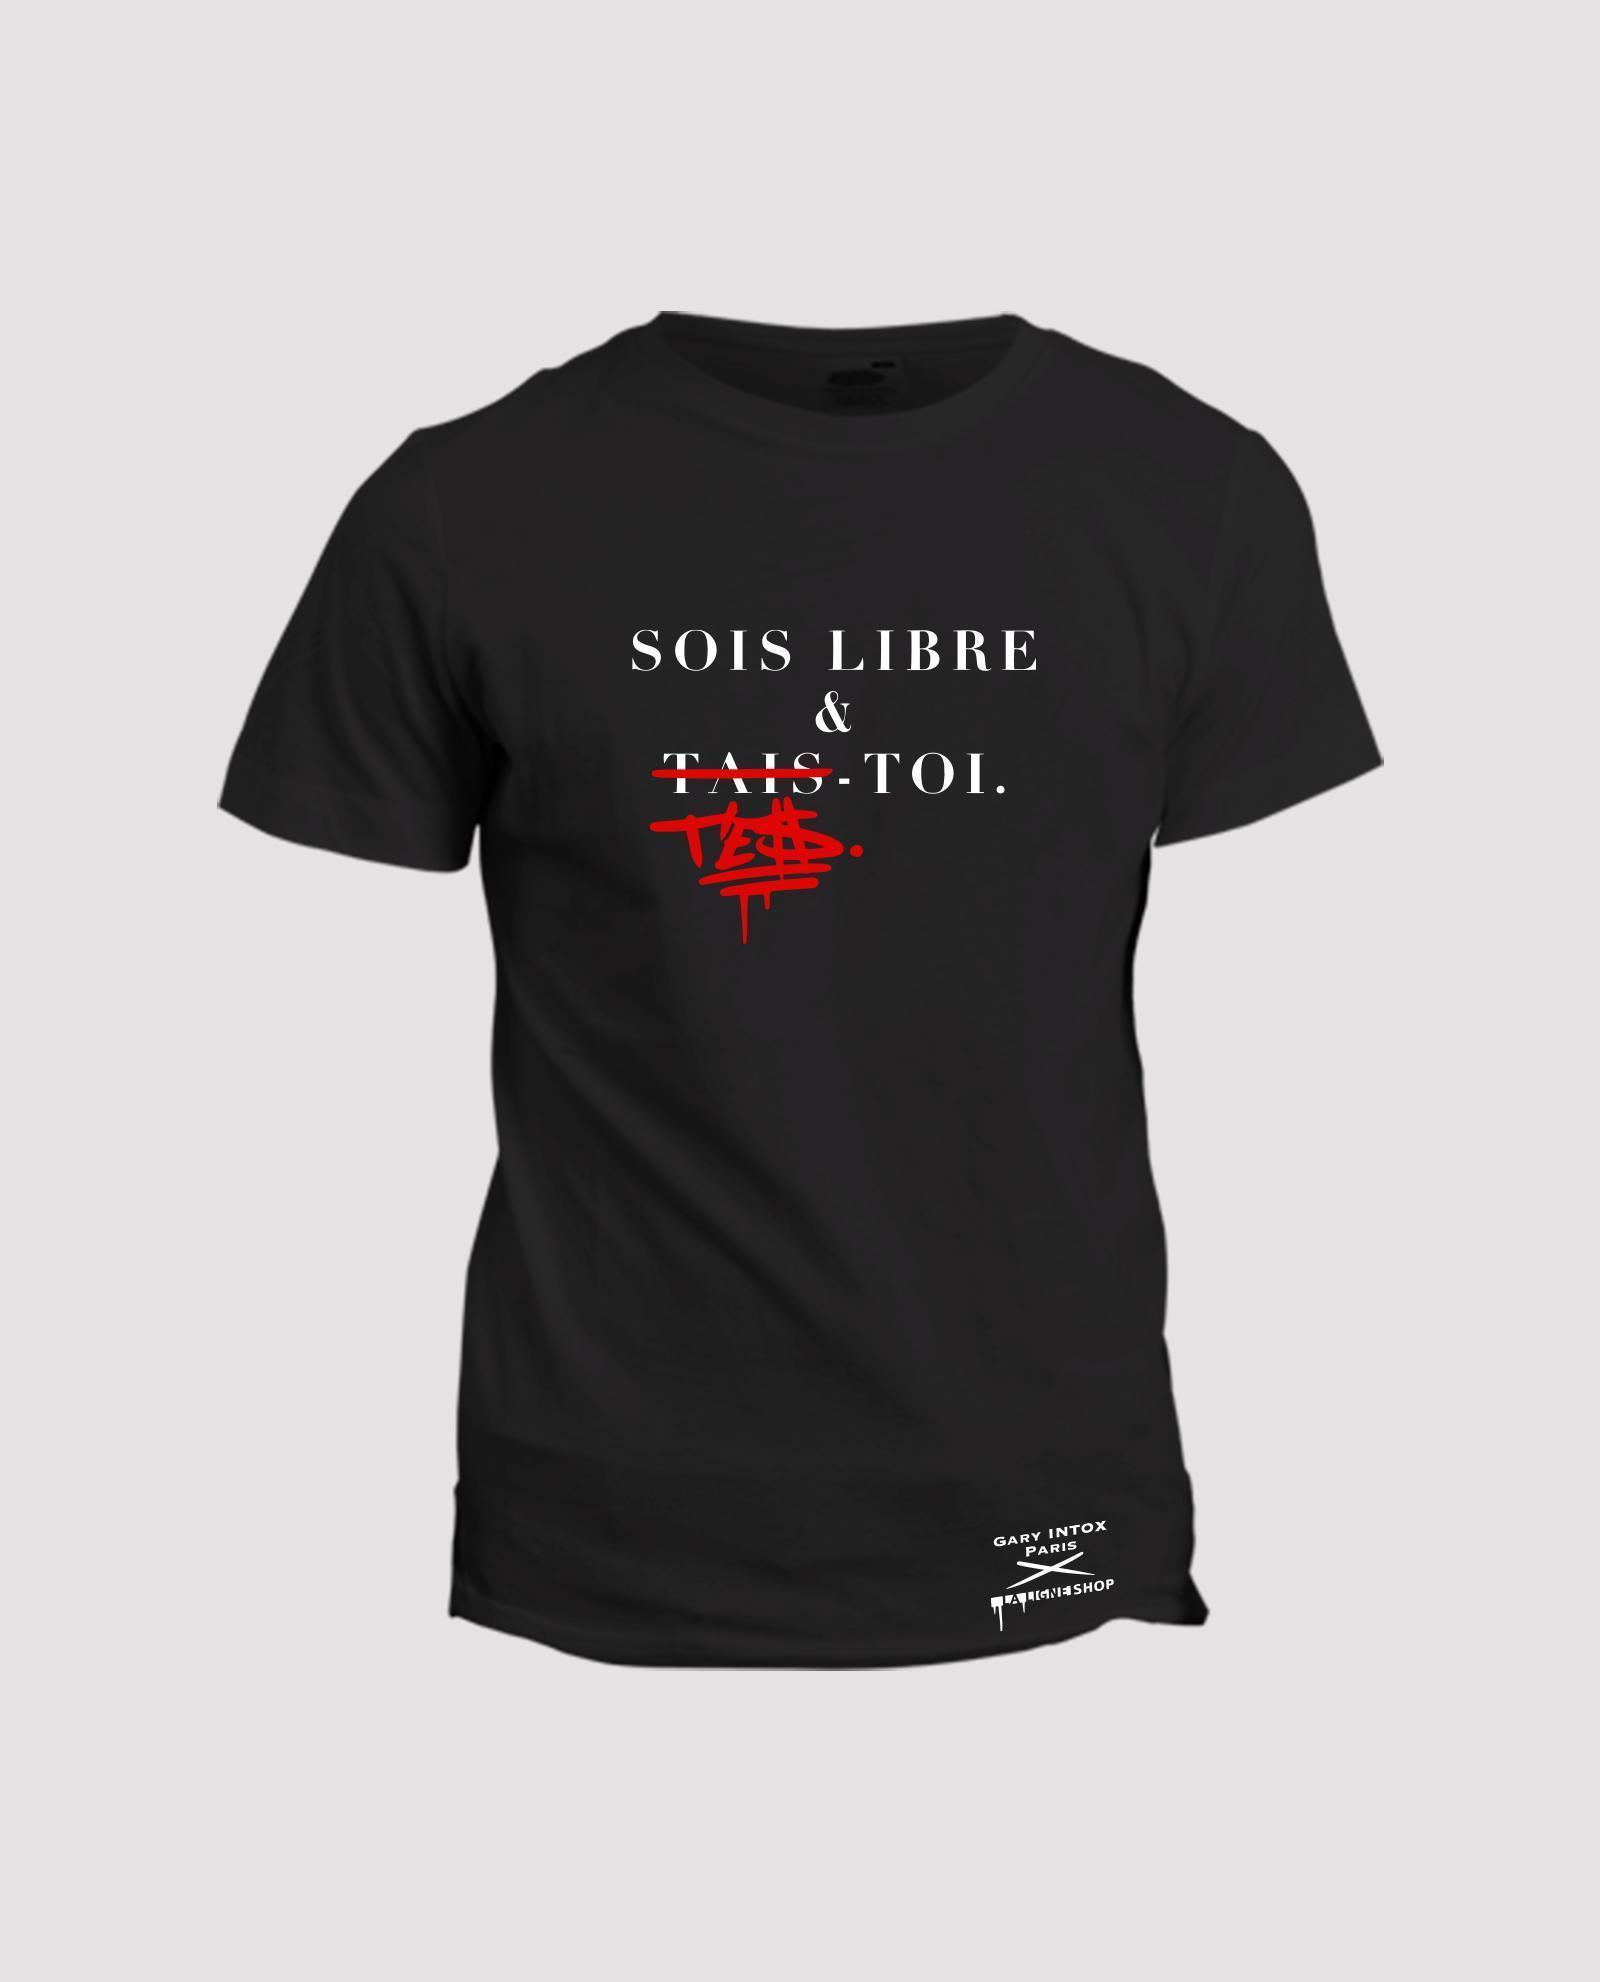 la-ligne-shop-collab-t-shirt-gary-intox-paris-sois-libre-et-tais-toi-t-es-toi-front-noir